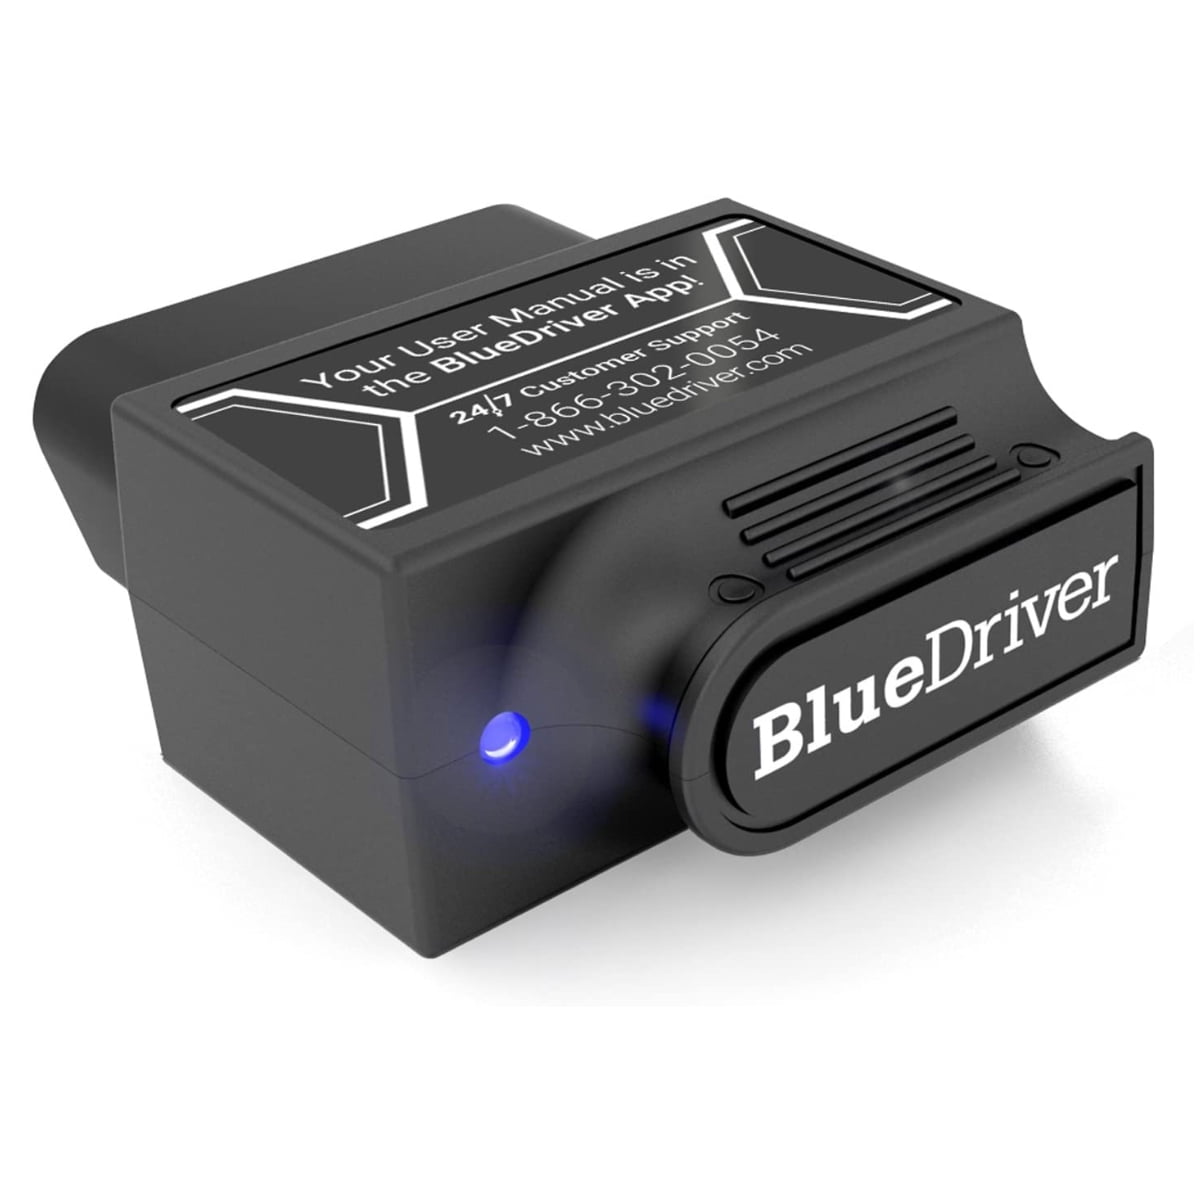 der ovre Sig til side Samle BlueDriver Pro OBD2 Bluetooth Car Diagnostic Scan Tool and Code Reader for  iPhone and Android - Walmart.com